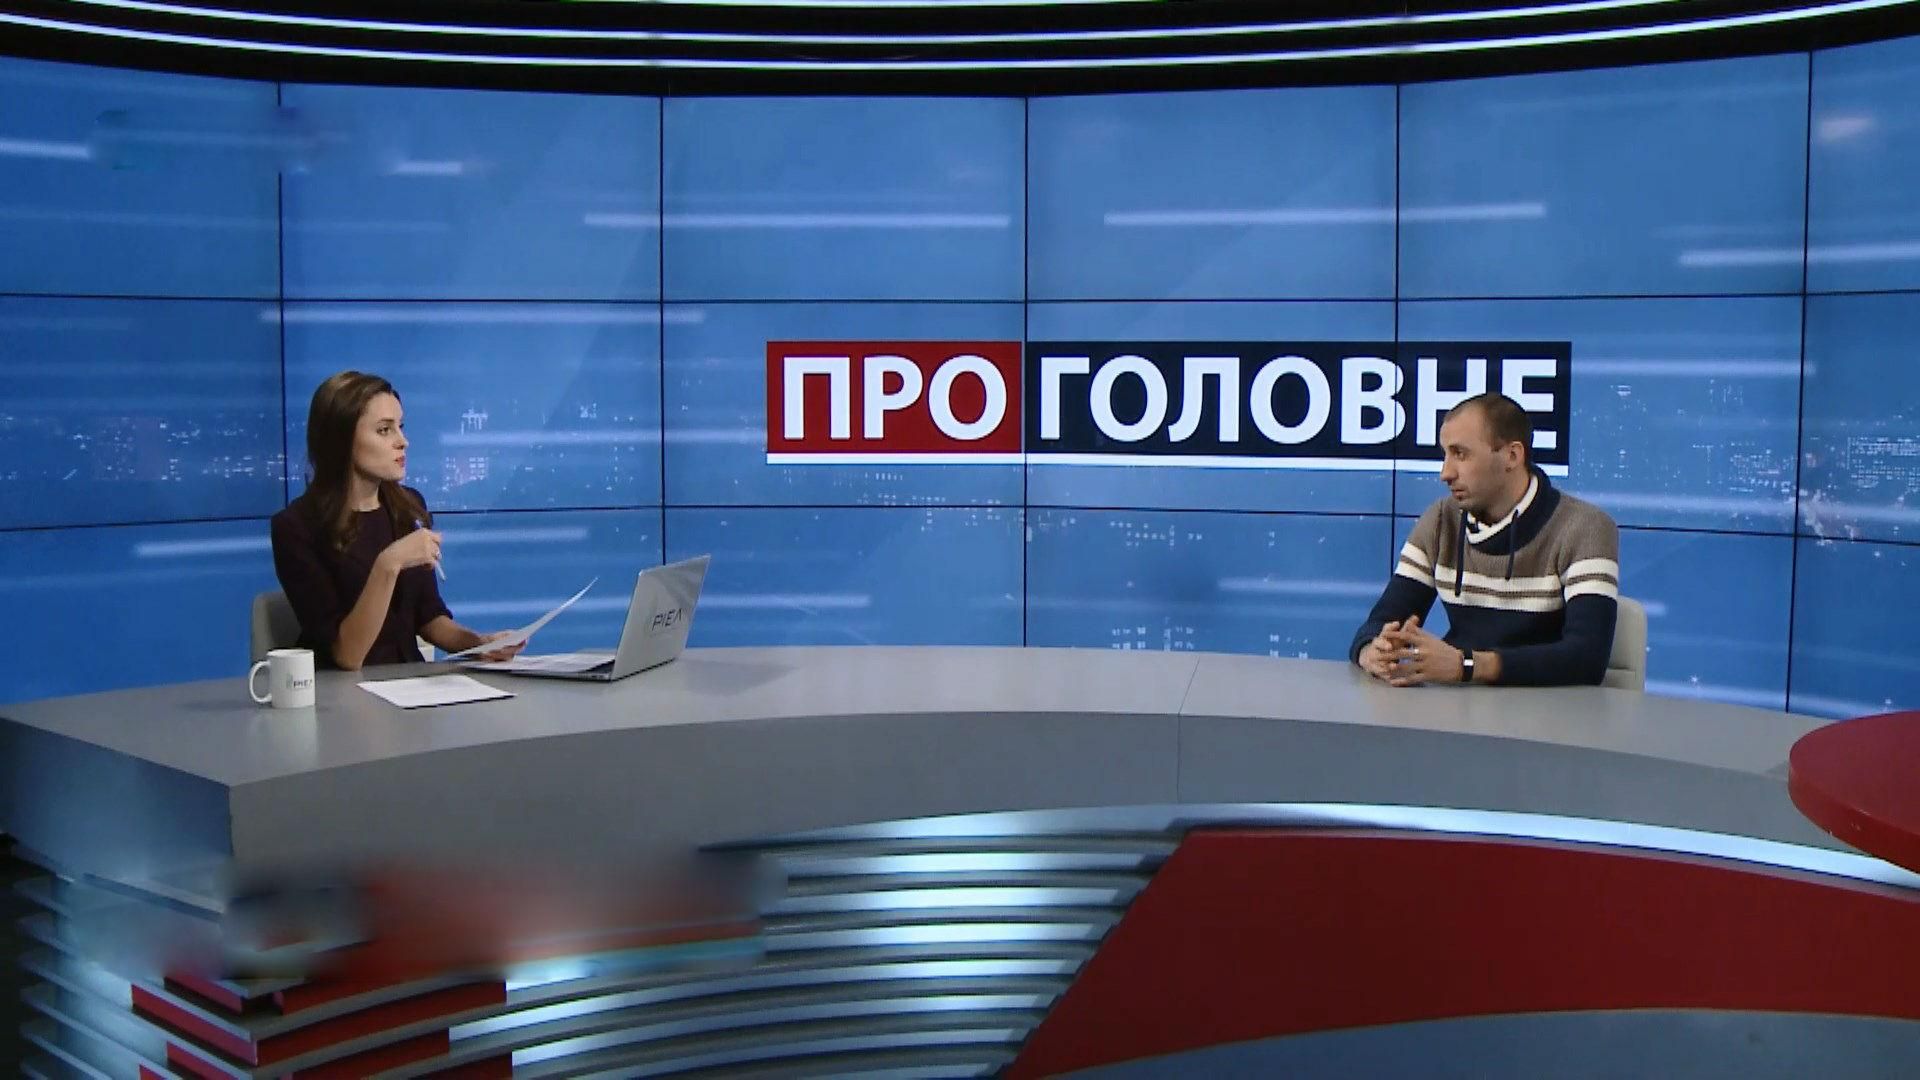 Передвиборча кампанія Порошенка та Тимошенко: як вони борються за виборця